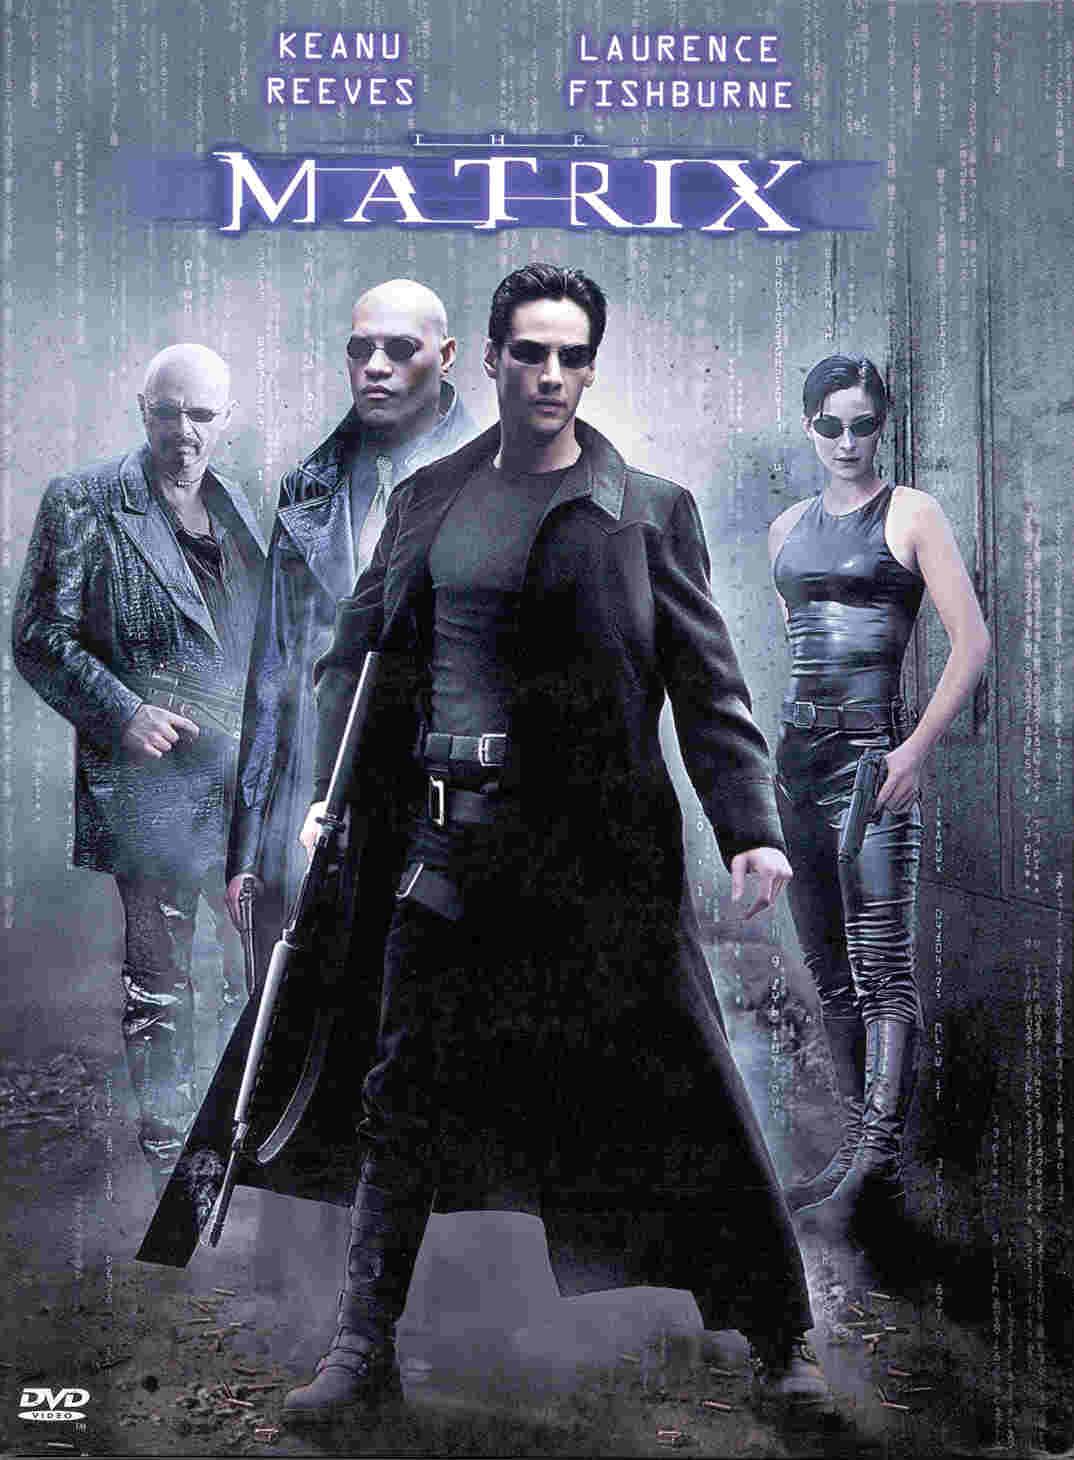 Mátrix (The Matrix)